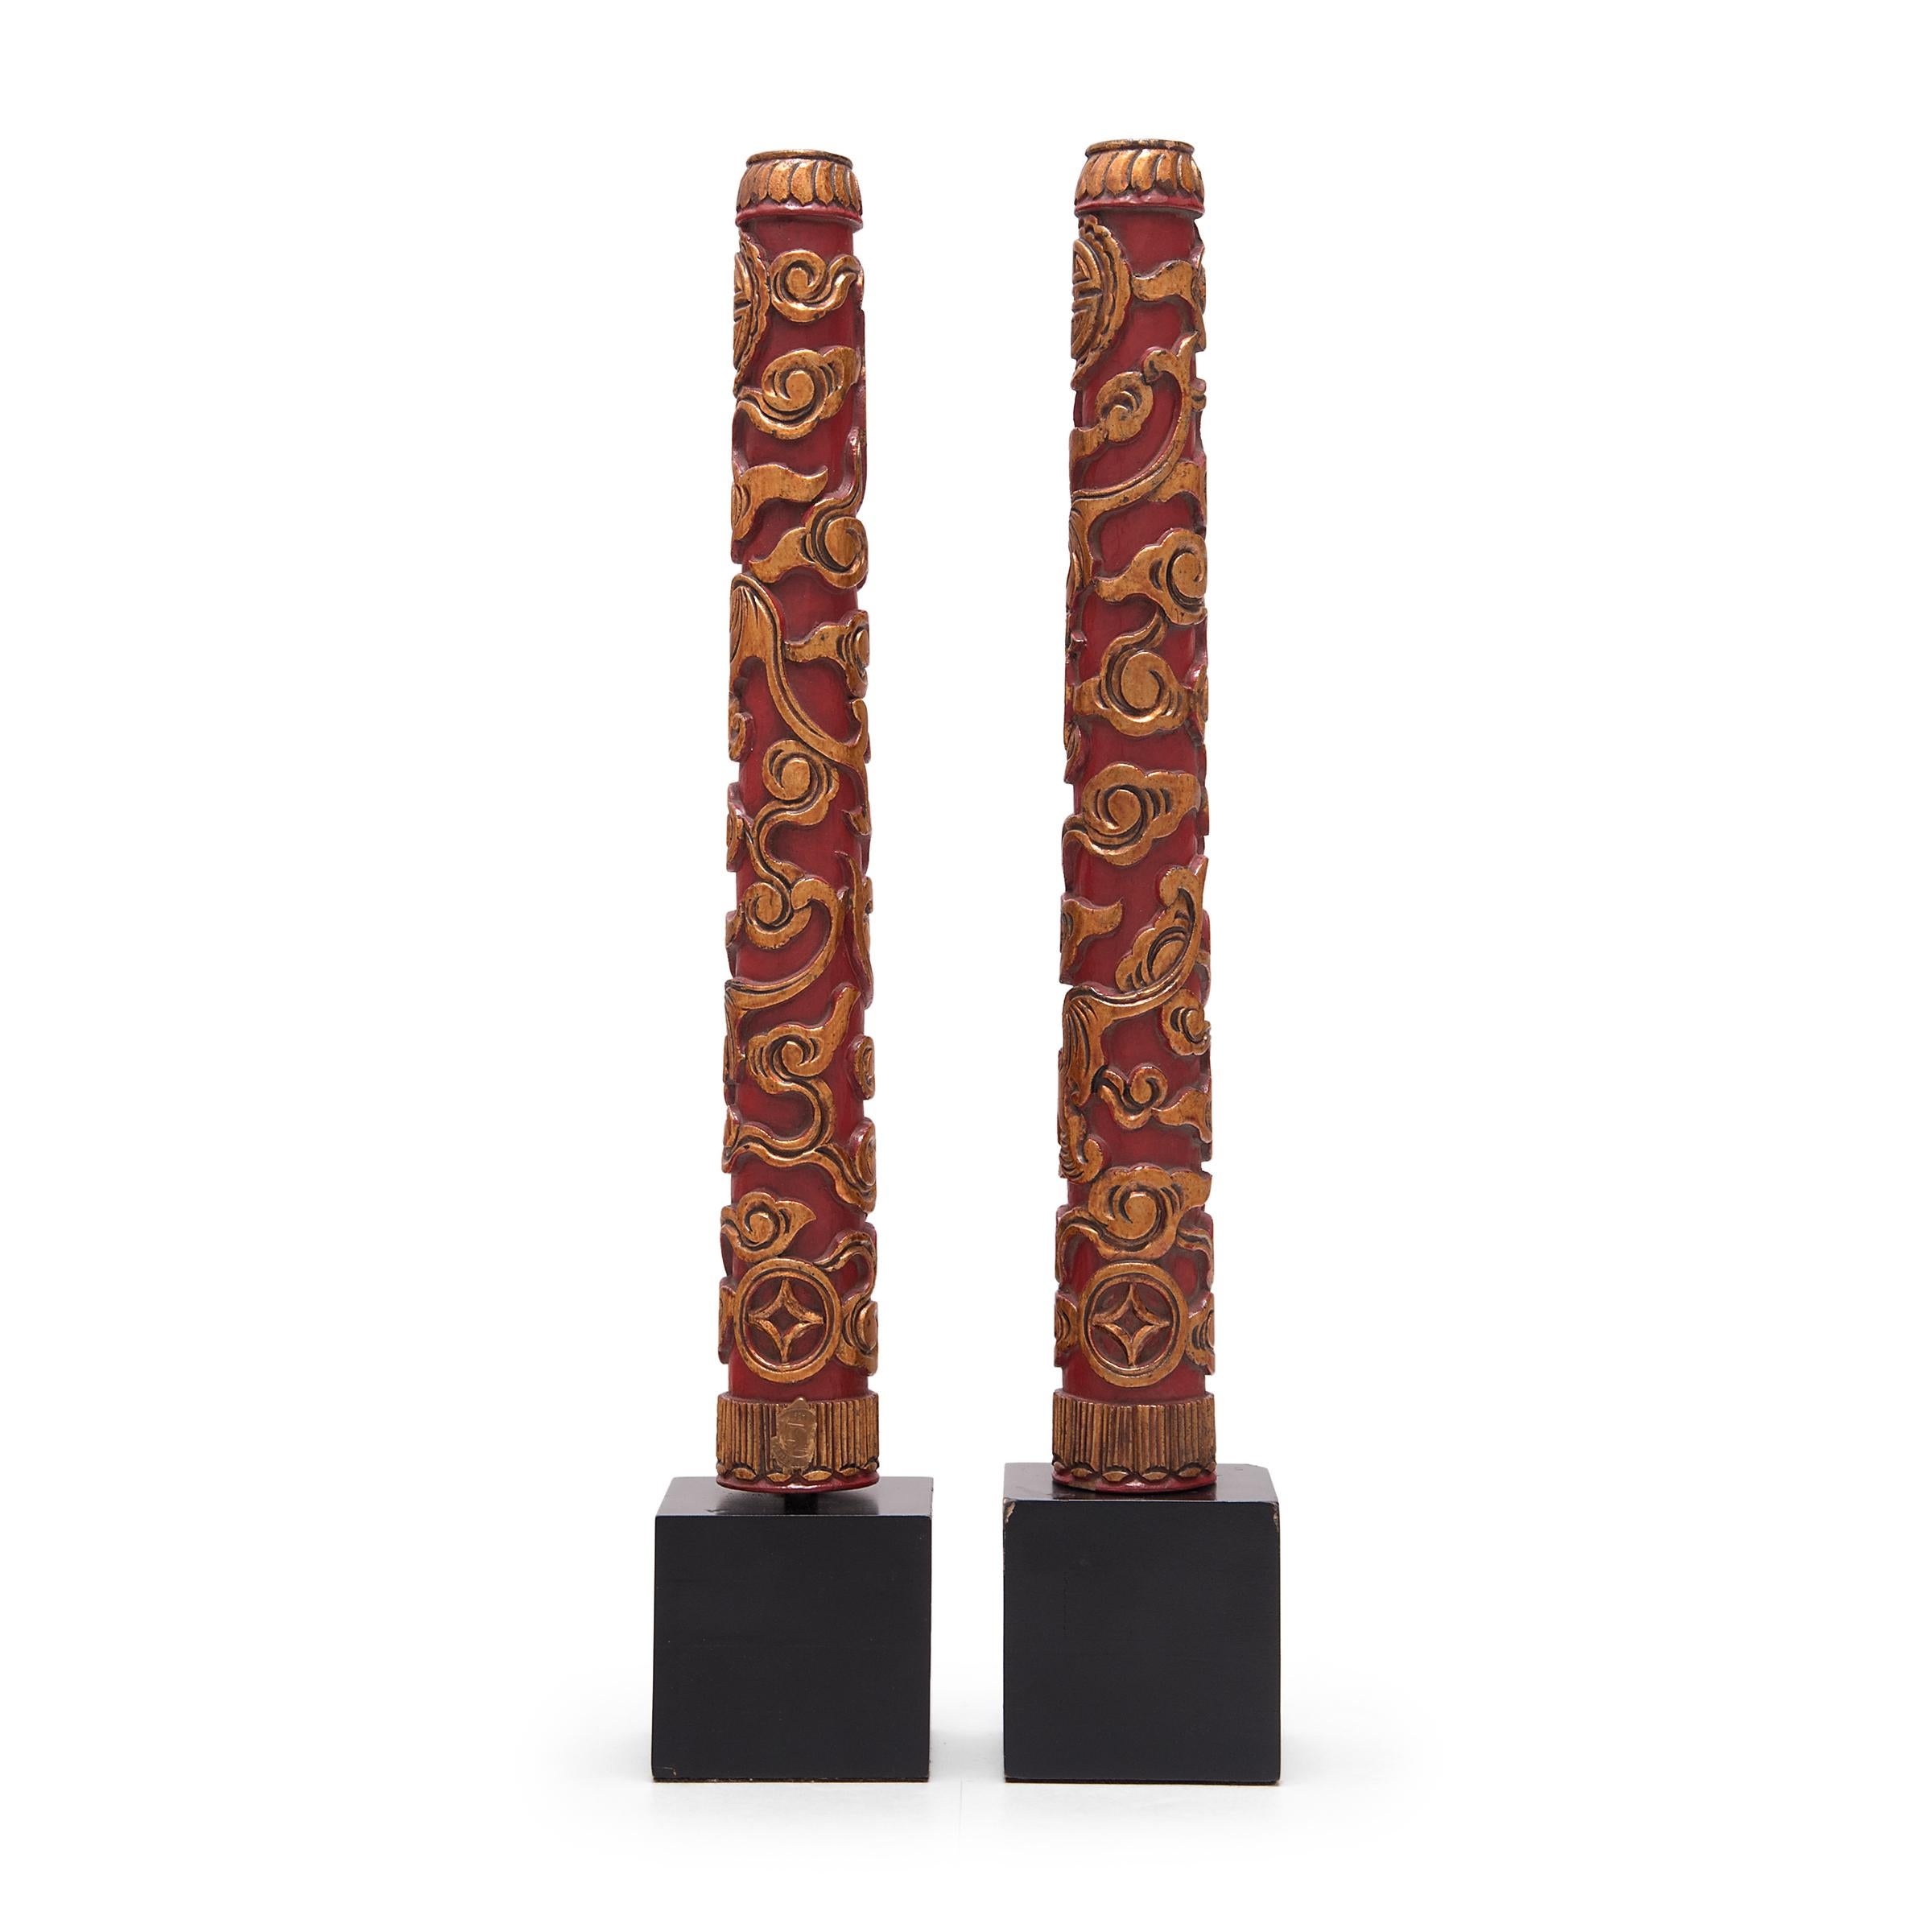 Ces piliers en bois sculptés à la main étaient autrefois utilisés pour élever l'encens brûlant dans un sanctuaire ou un autel. Élément essentiel de la prière rituelle, l'encens est brûlé en guise d'offrande et pour mesurer la durée du processus